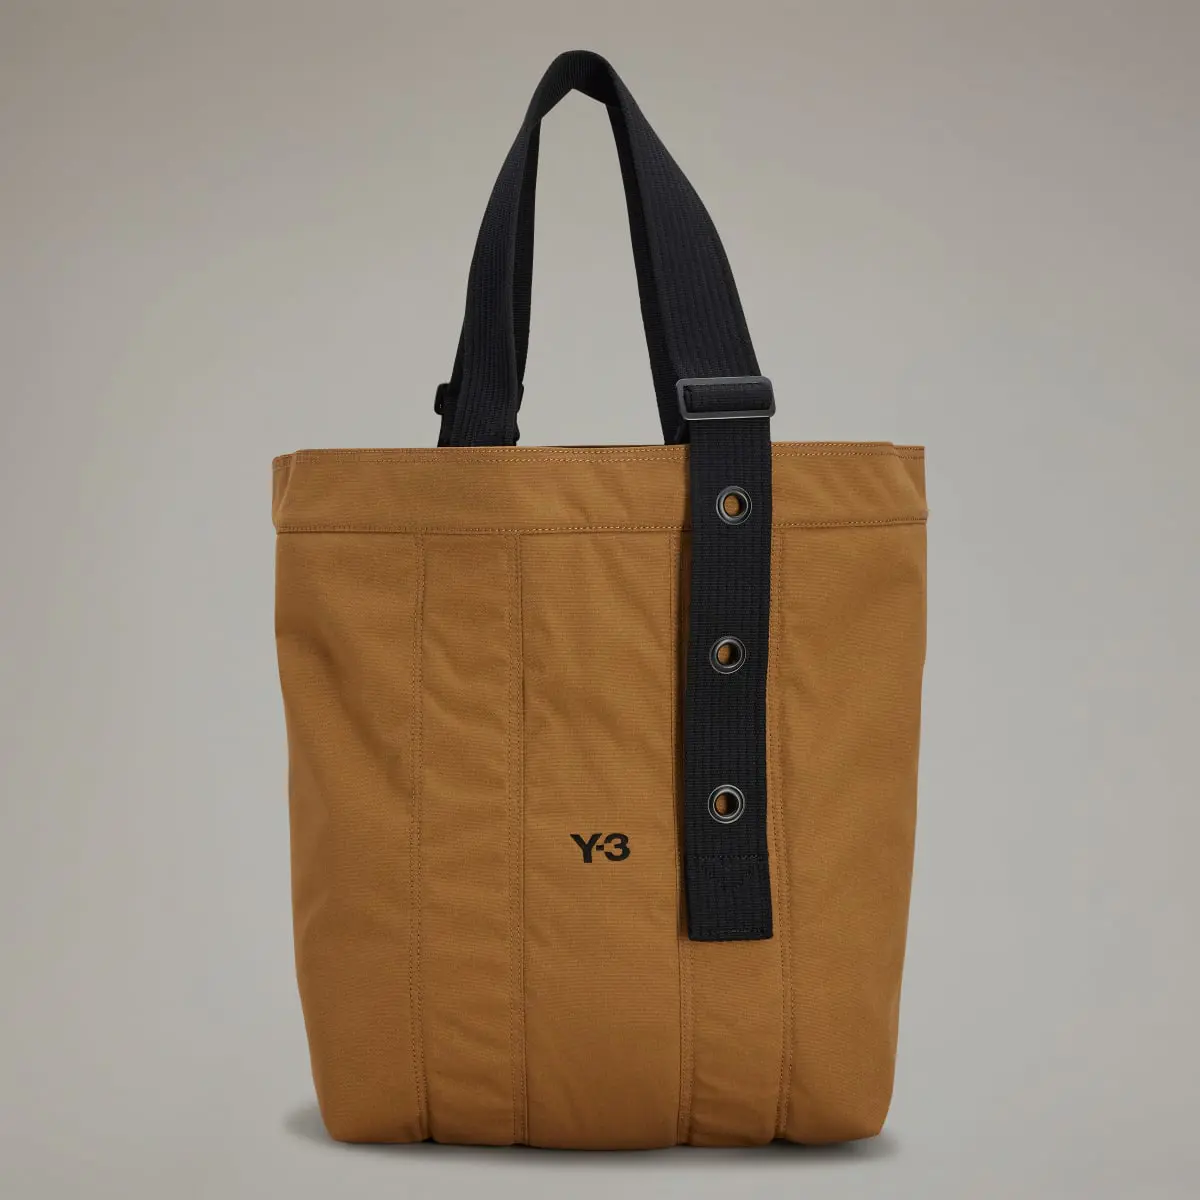 Adidas Y-3 Tote Bag. 2